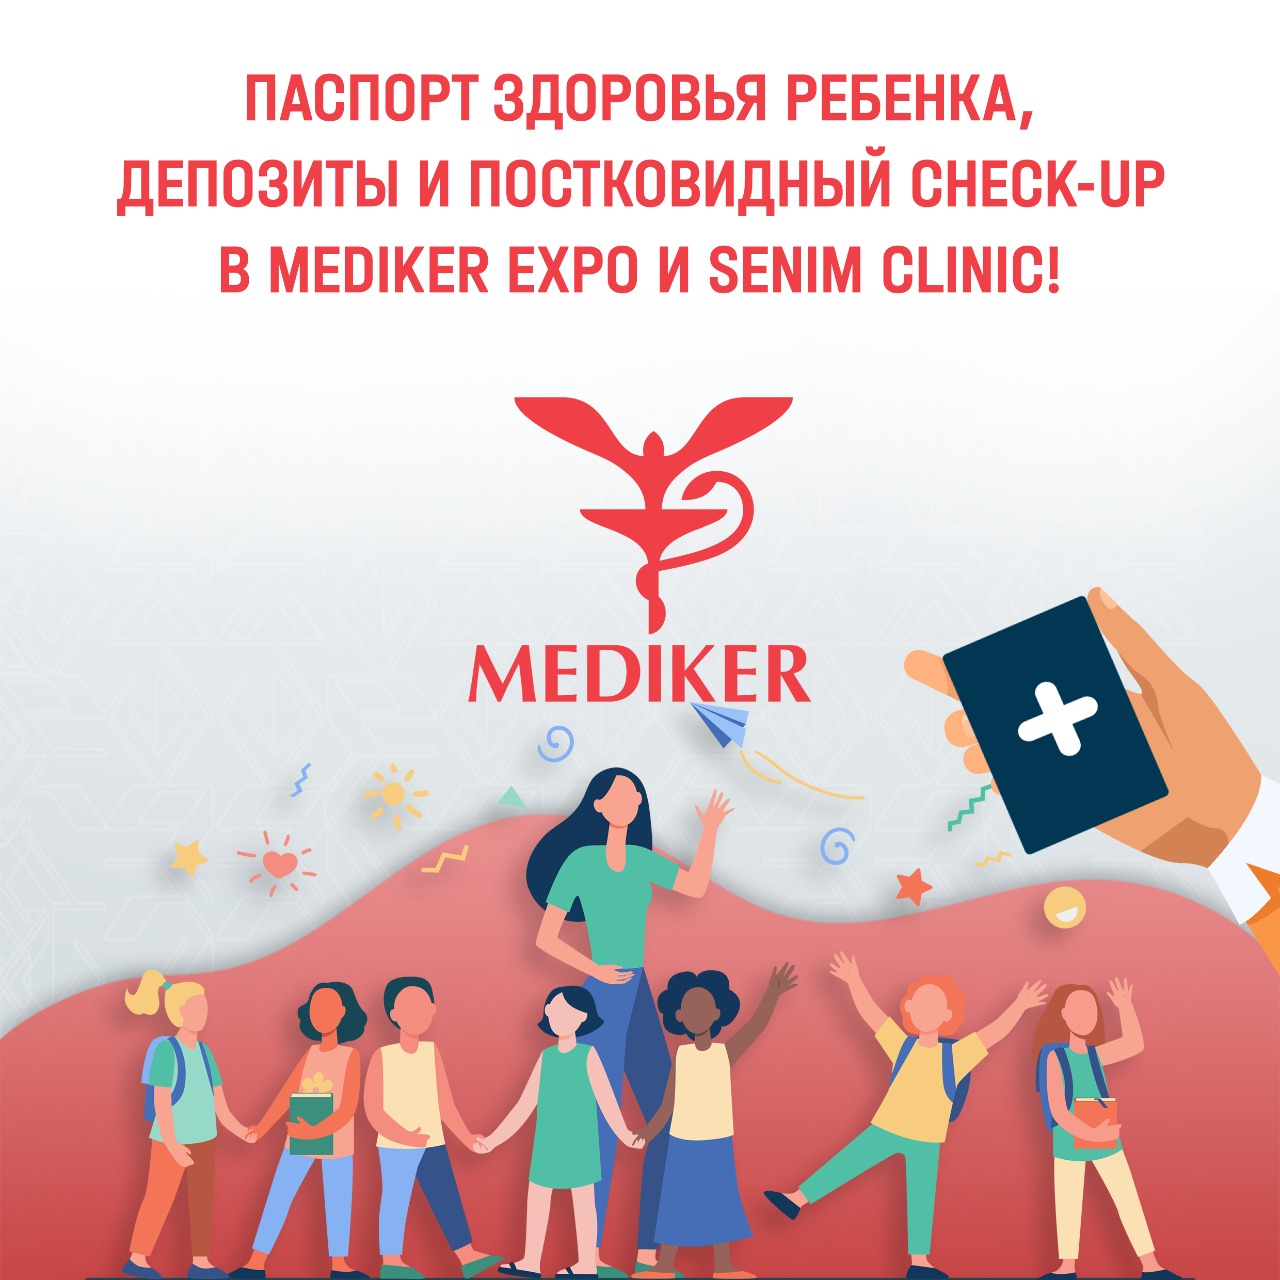 Паспорт здоровья ребенка, депозиты и постковидный Check-Up в Mediker Expo и Senim Clinic!